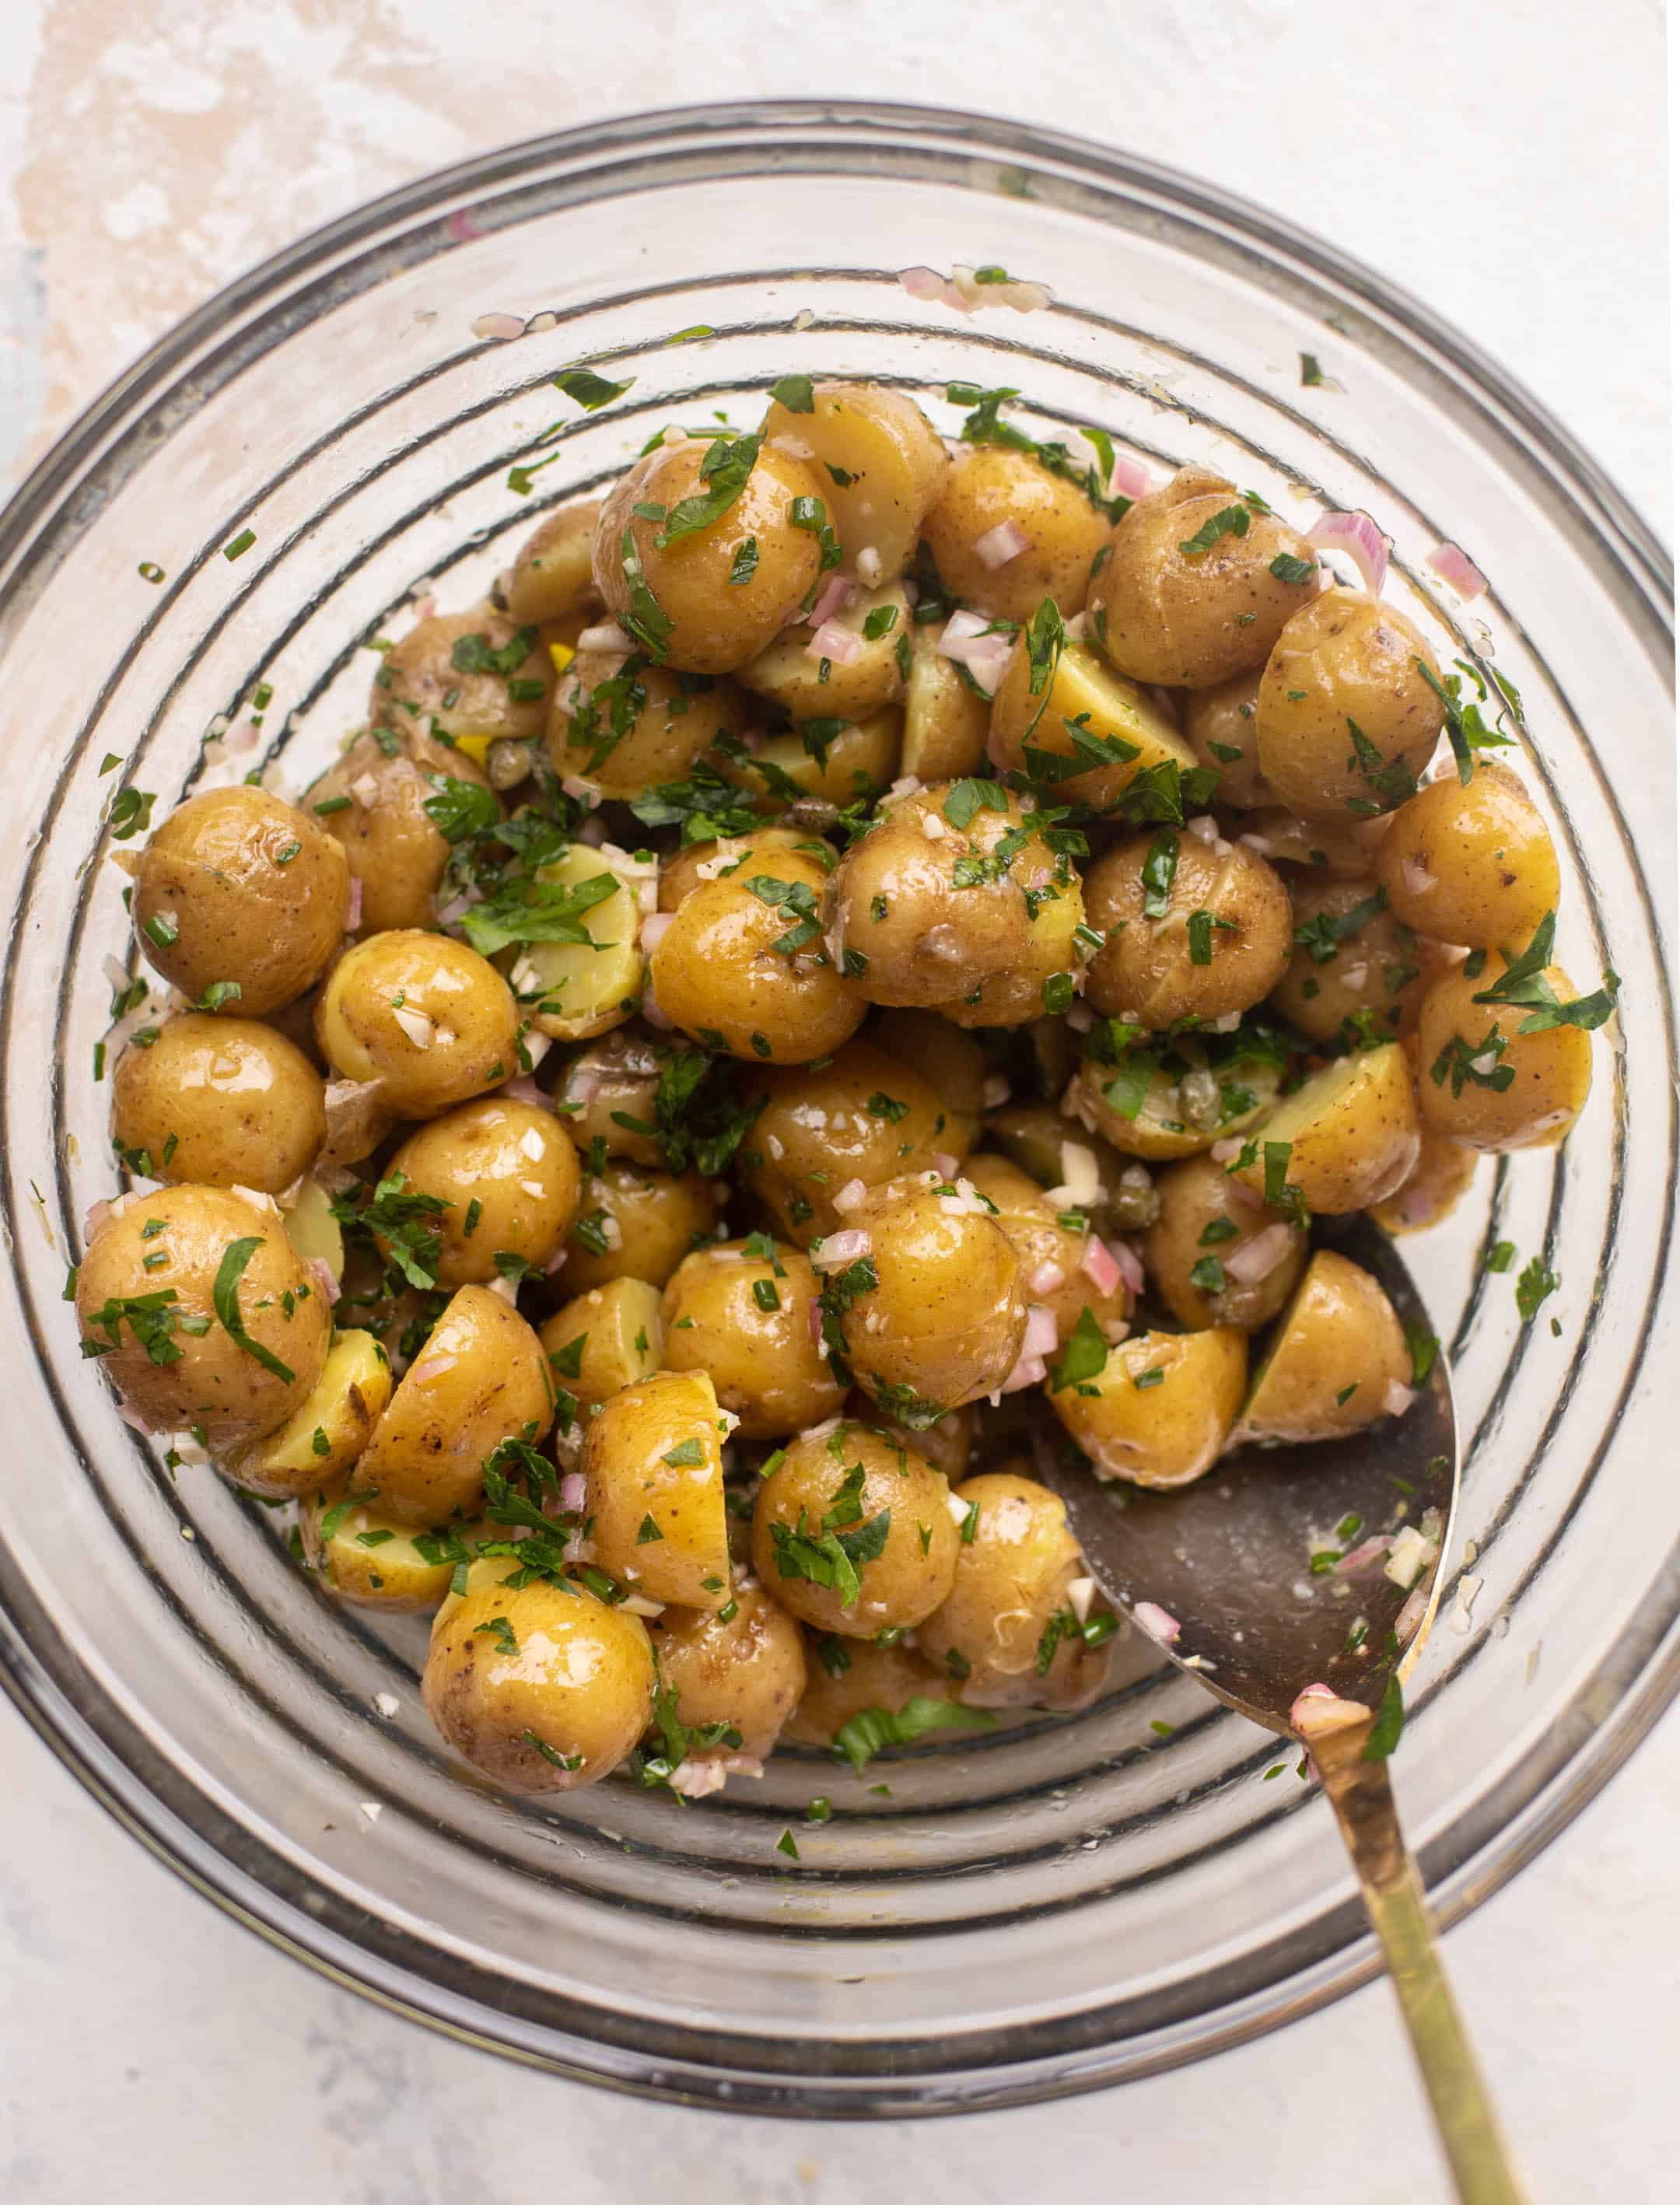 potato salad with piccata vinaigrette